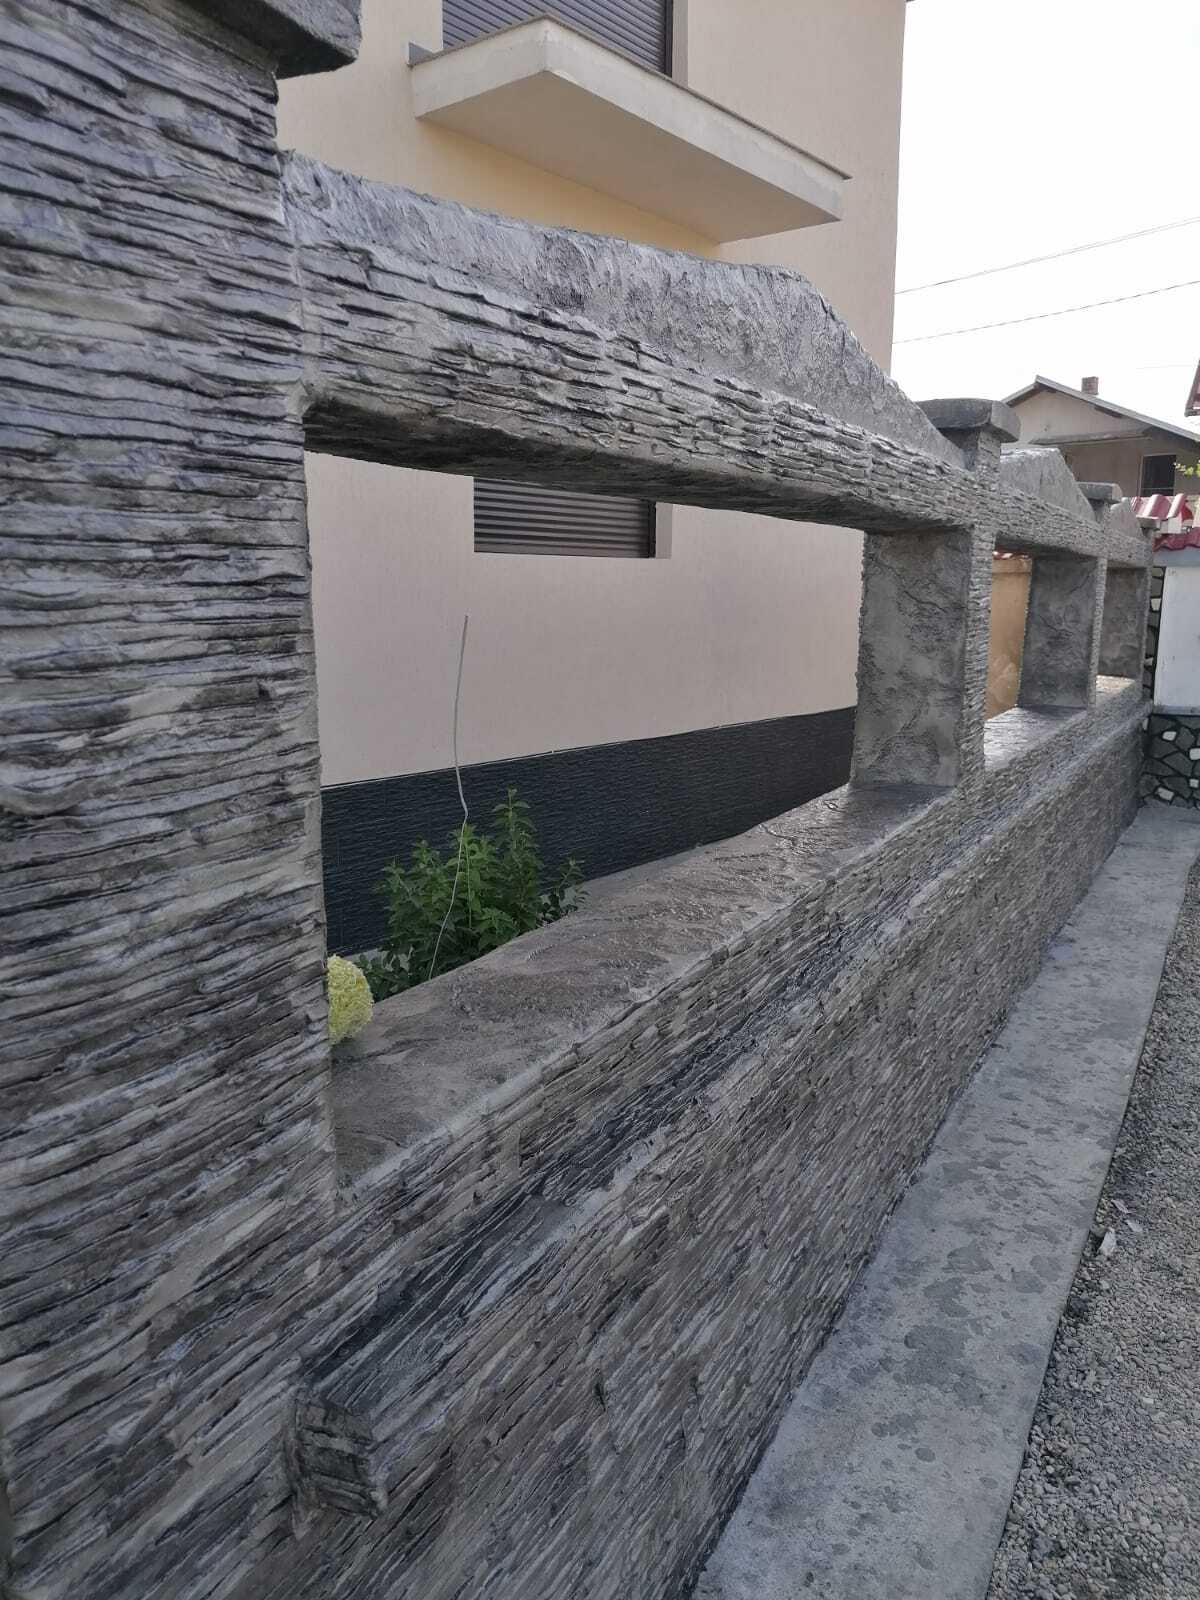 fasada hiše z vertikalnim tiskanim betonom, ki posnema kamen